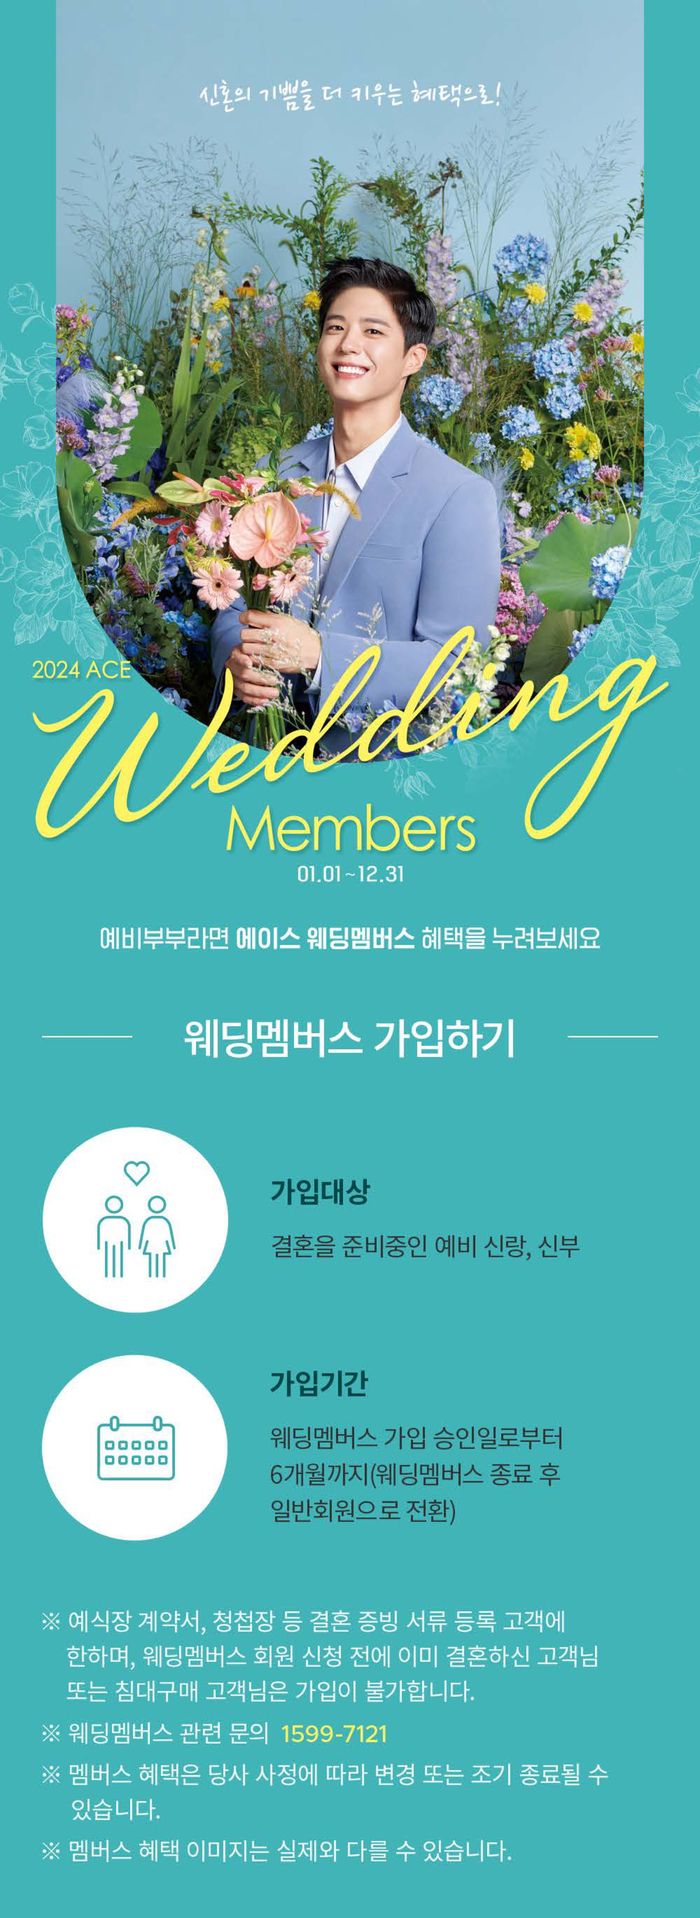 내서읍의 에이스침대 카탈로그 | Weeding Members | 2024. 1. 26. - 2024. 12. 31.